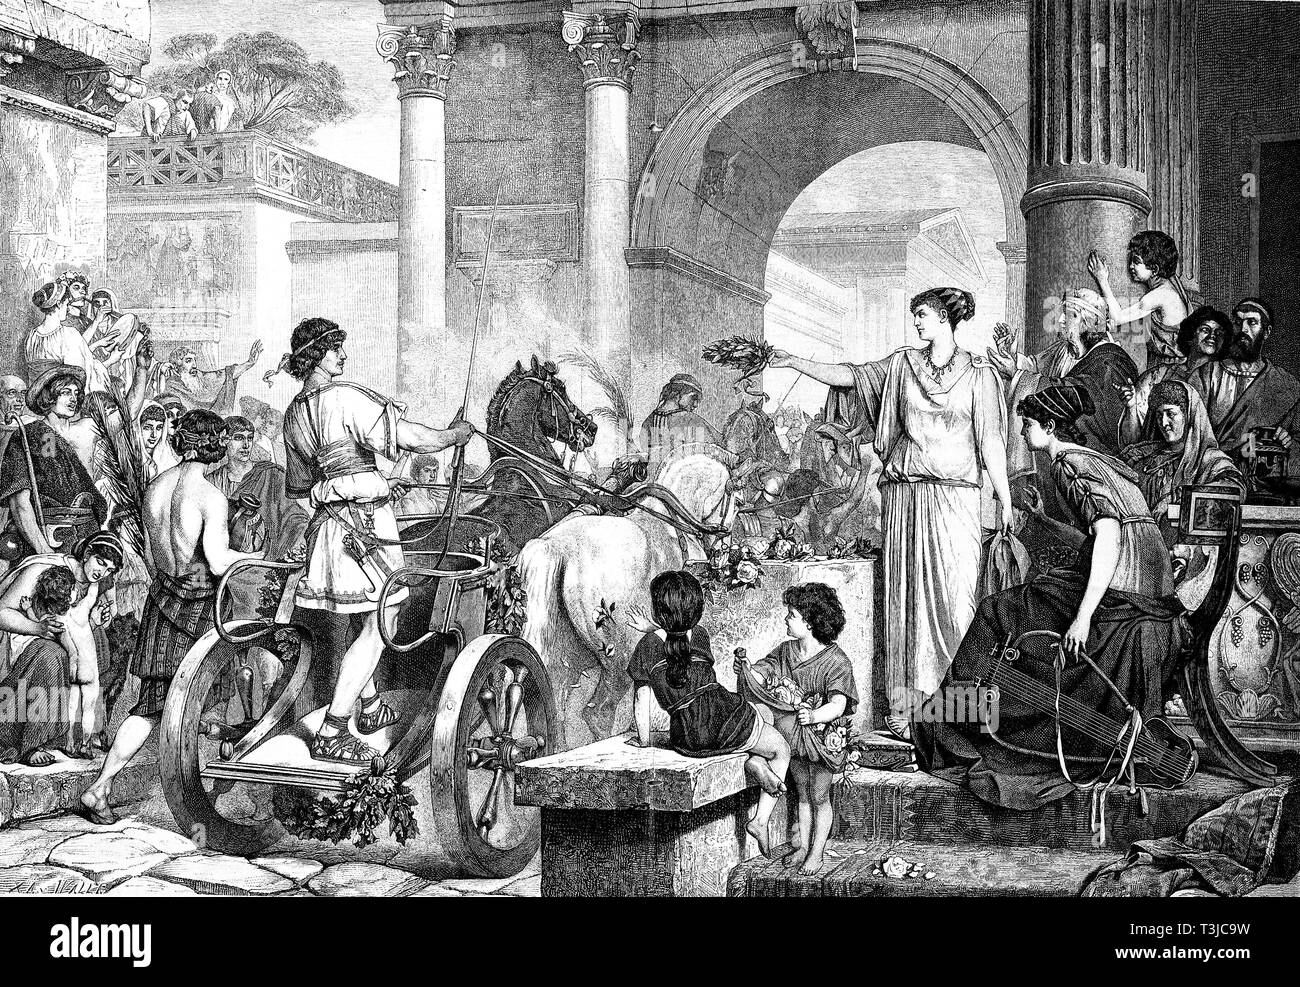 Entrée du gagnant de la course de chars dans la Rome historique, illustration historique, 1880, Italie Banque D'Images